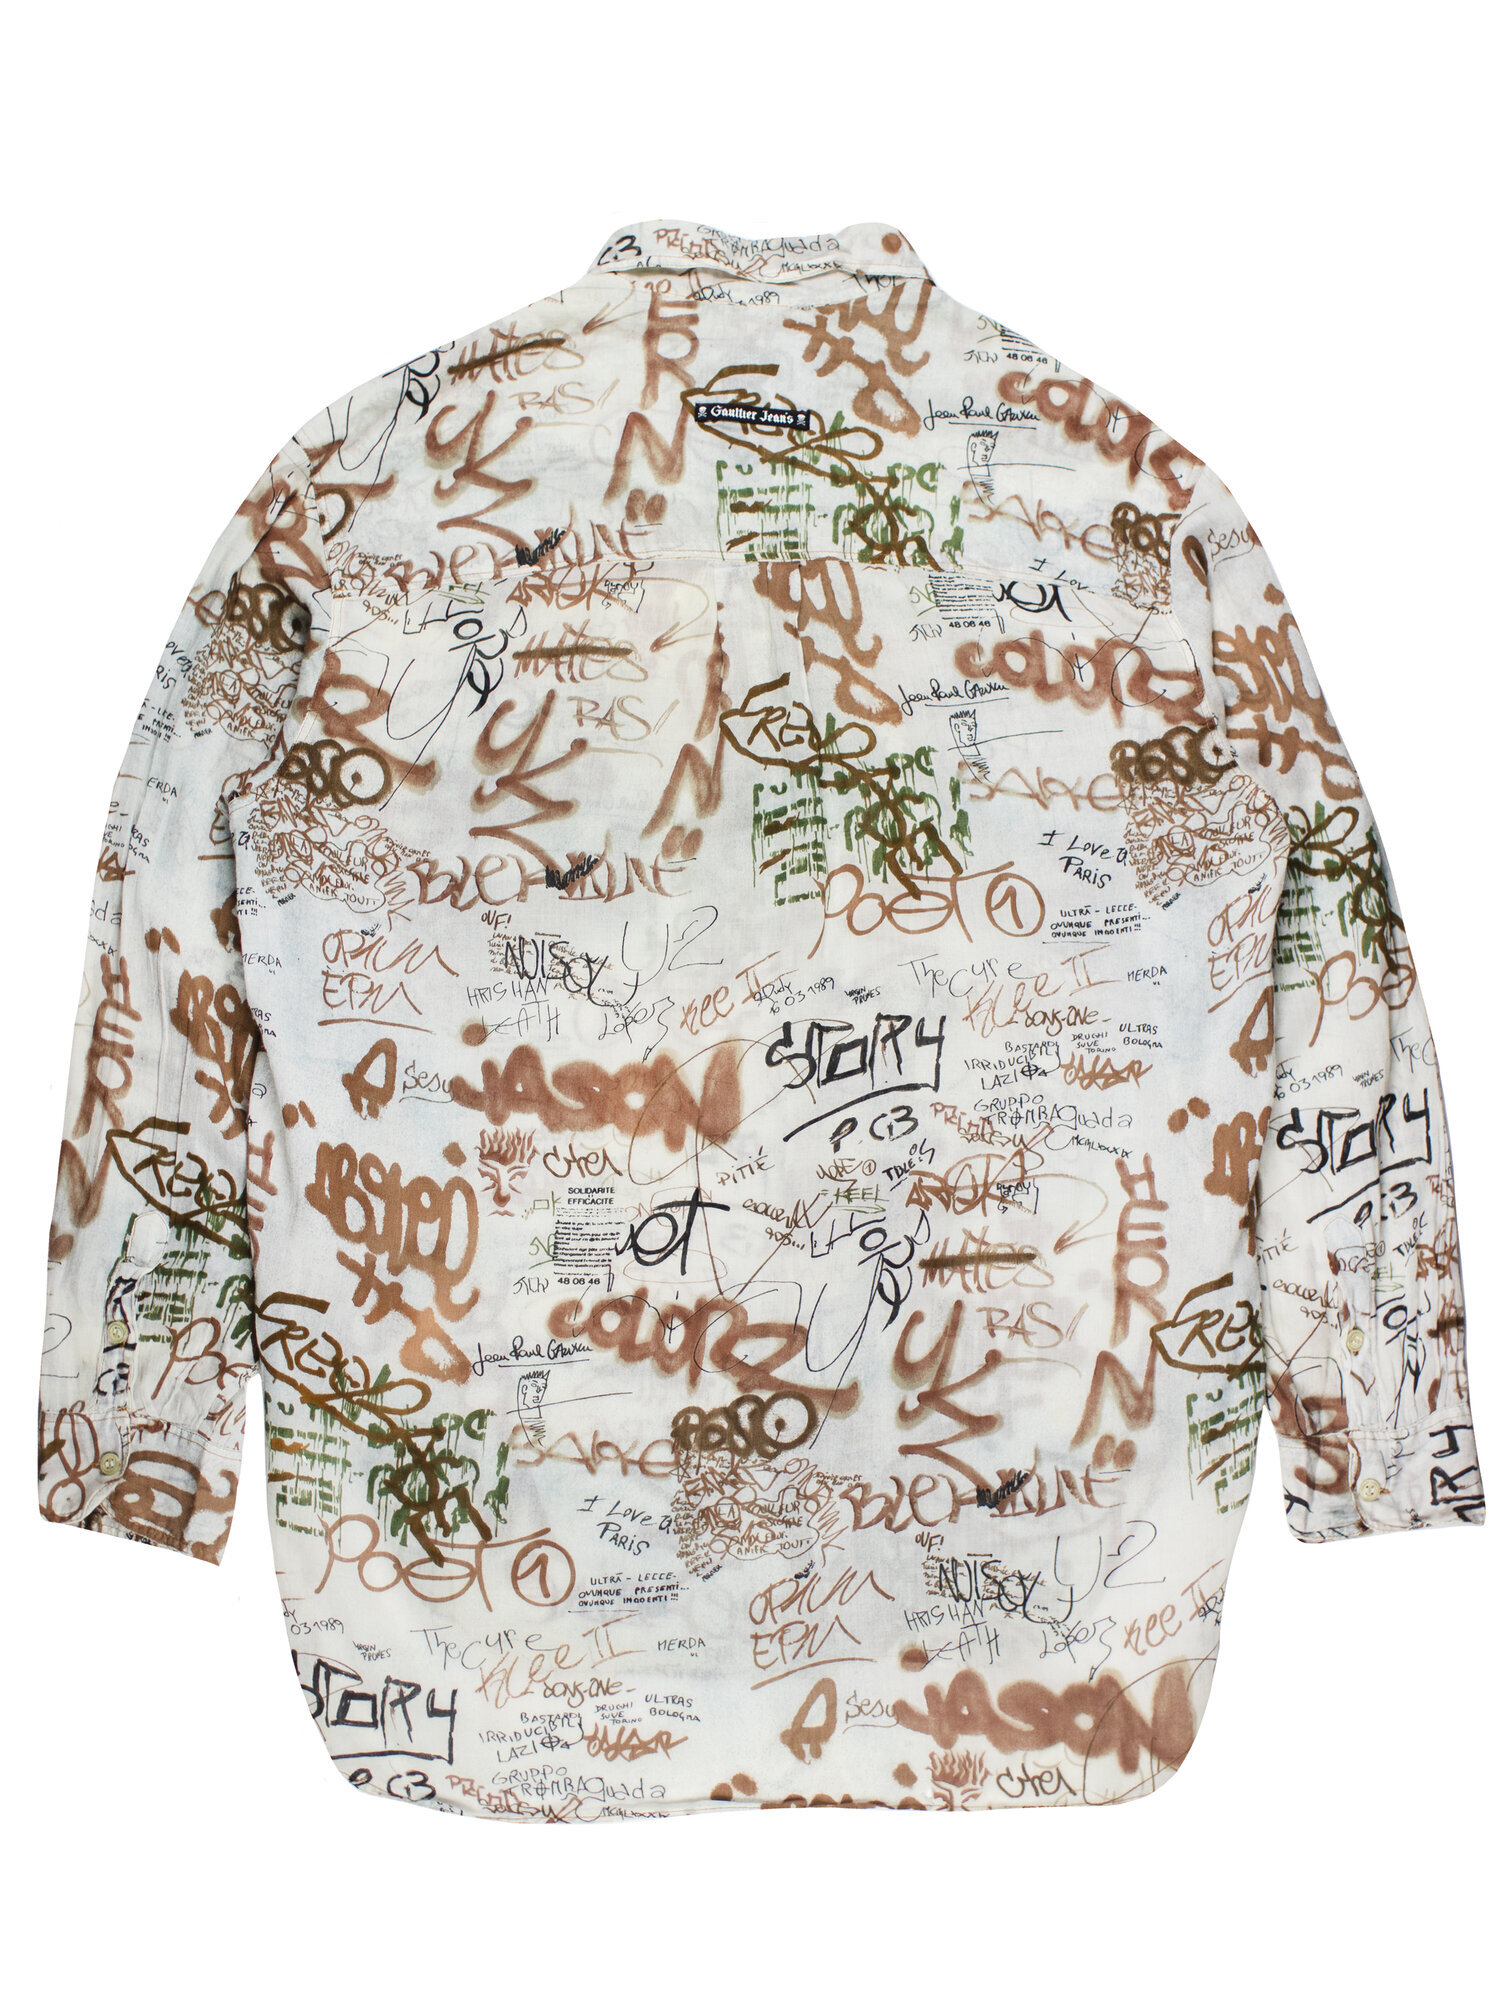 Jean Paul Gaultier SS1994 Graffiti Shirt — Middleman Store